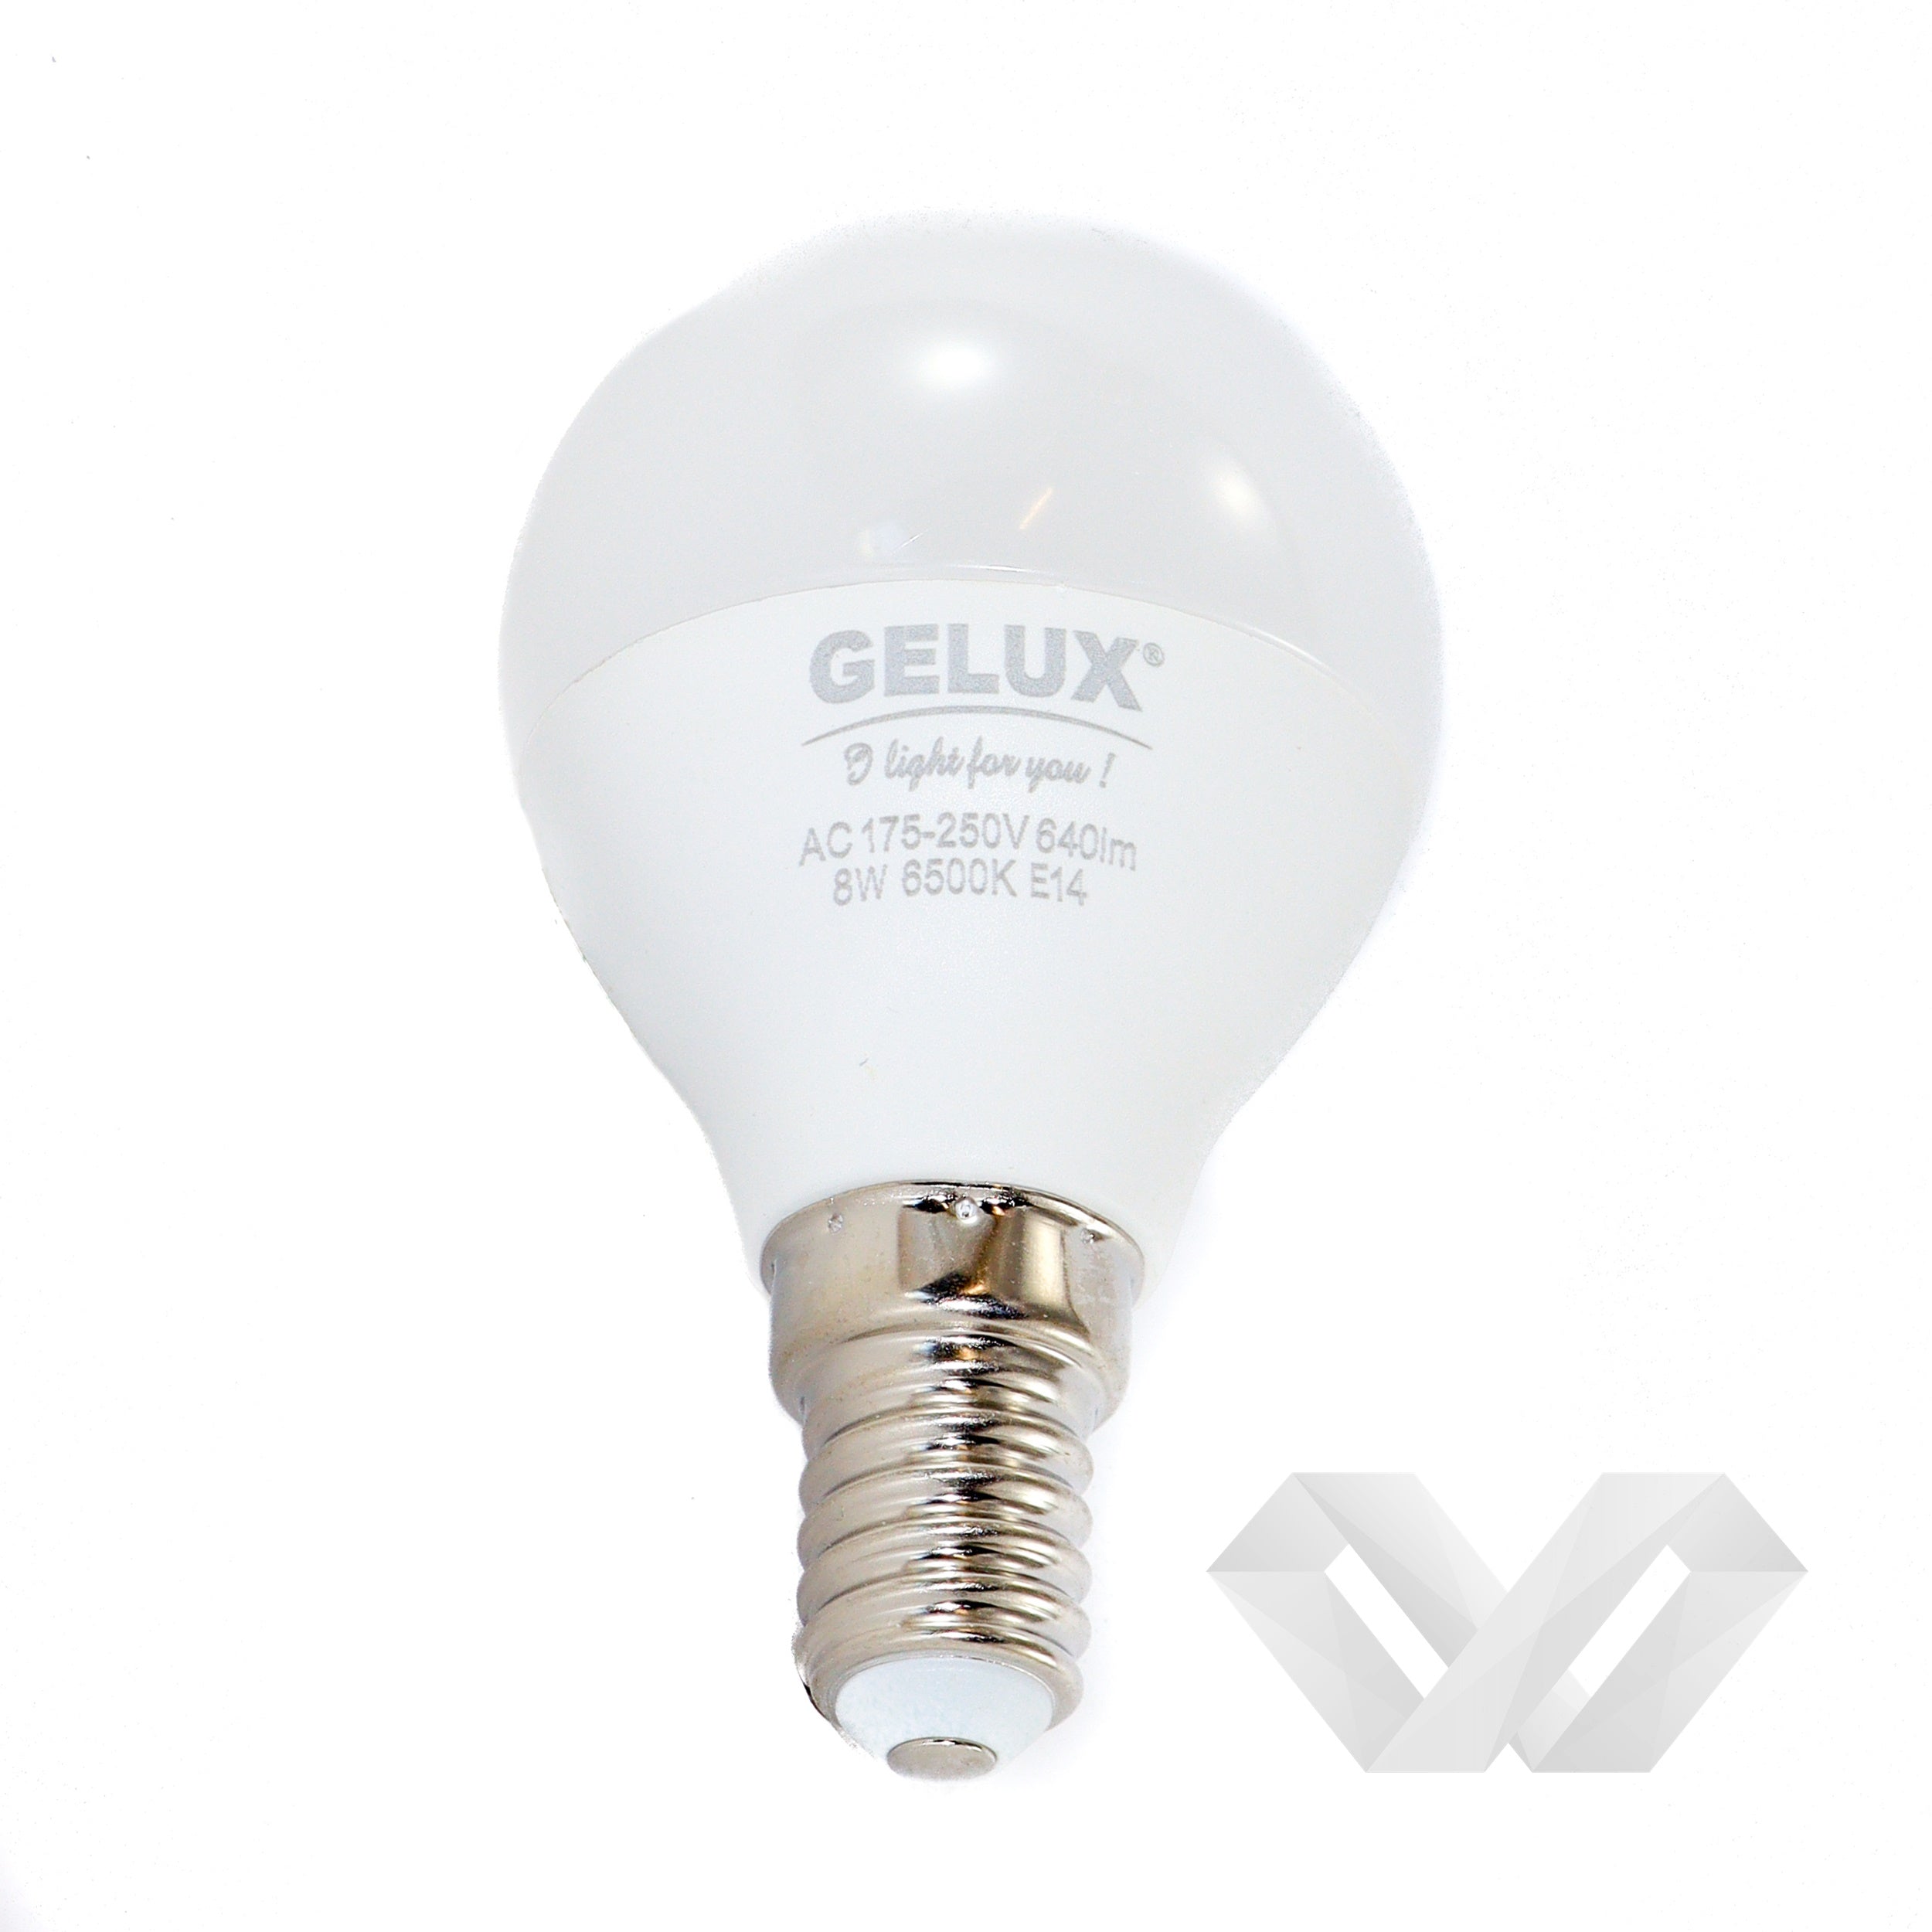 Bec LED Sferic 7W E27 ECOLED, echivalent 56W lumina calda, Gelux